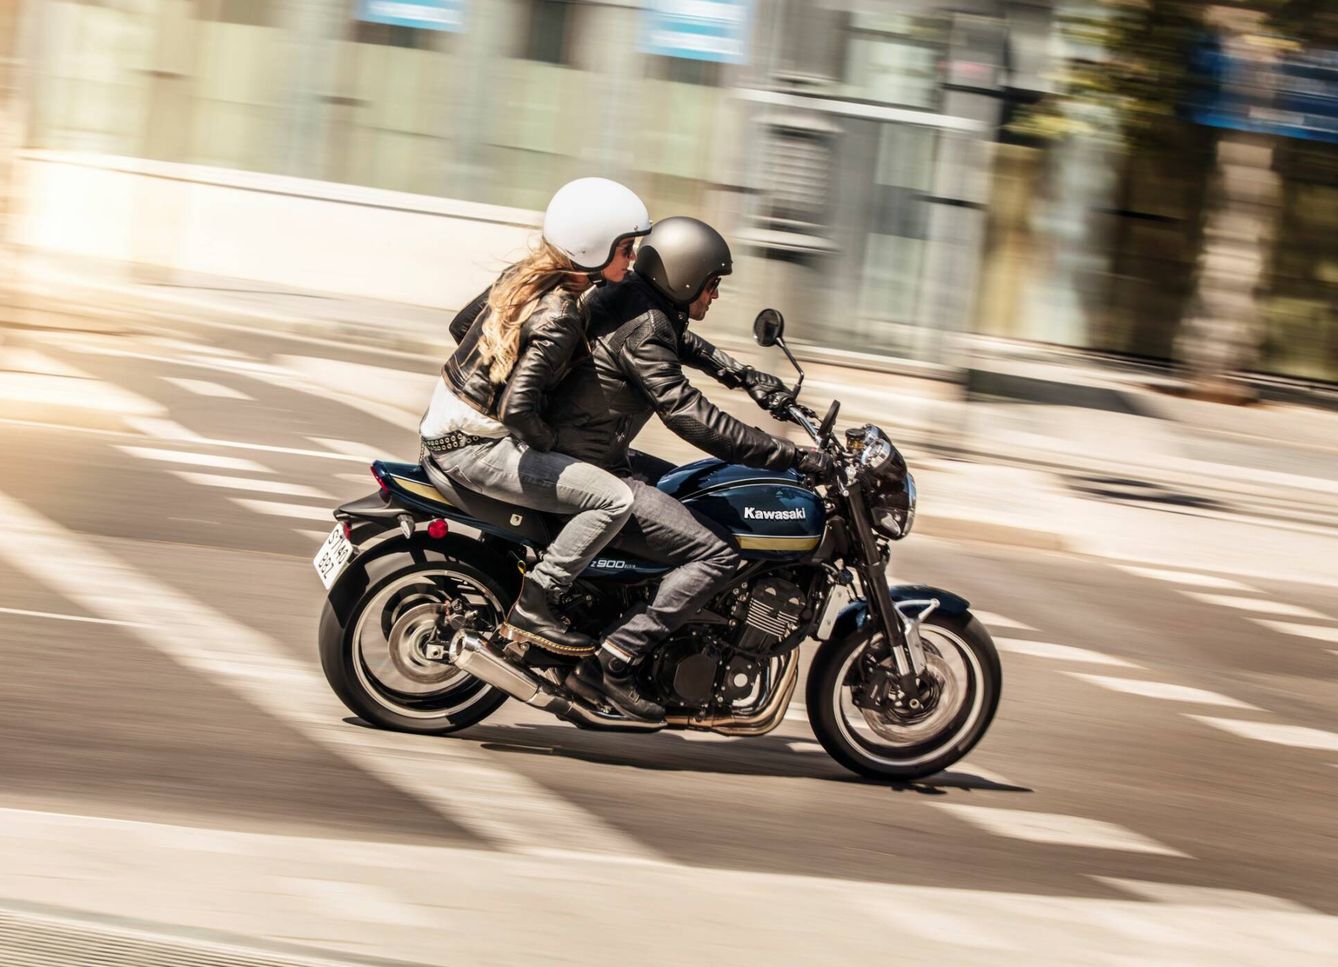 La Z900RS, única moto 'de verdad' entre los 10 modelos más vendidos en España, destaca por una magnífica ergonomía.